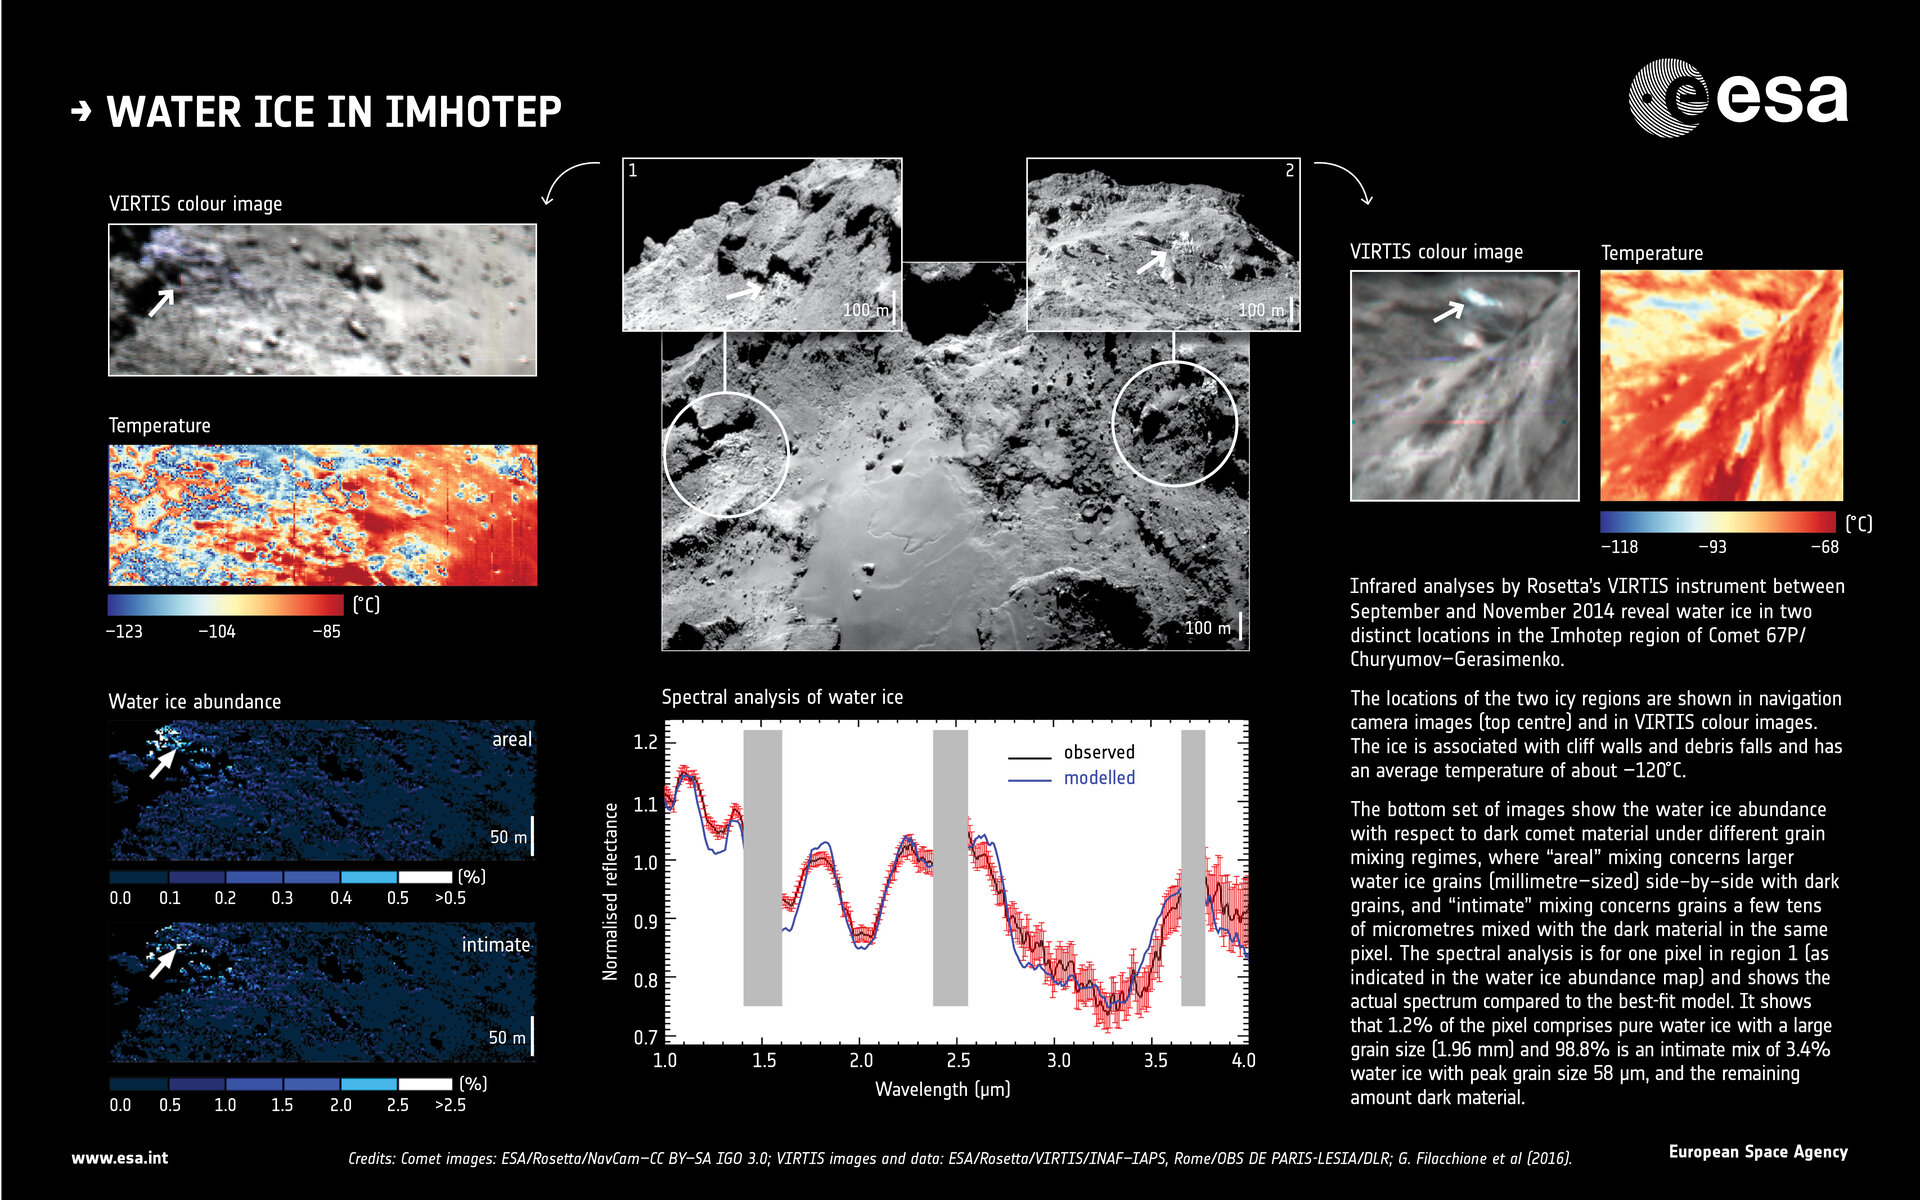 Infrarot-Aufnahmen von Wassereis in der Imhotep-Region des Kometen 67P/Tschurjumow-Gerasimenko